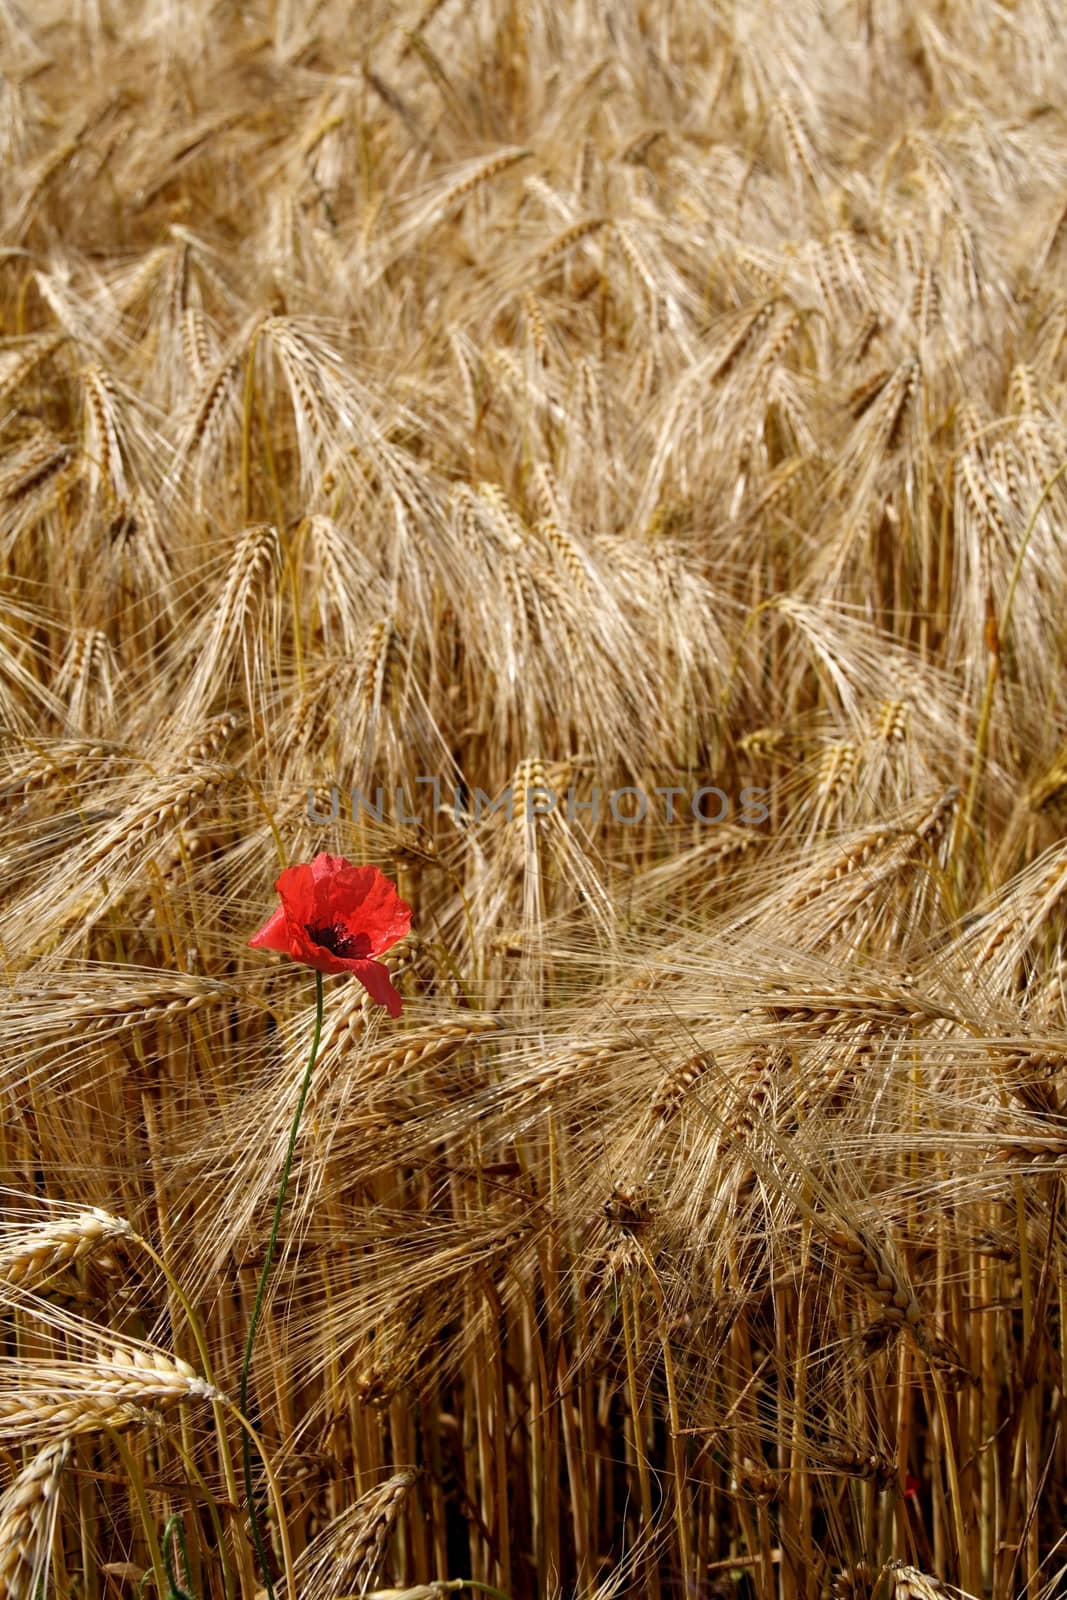 Lonely poppy in a field of rye by rainfallsup